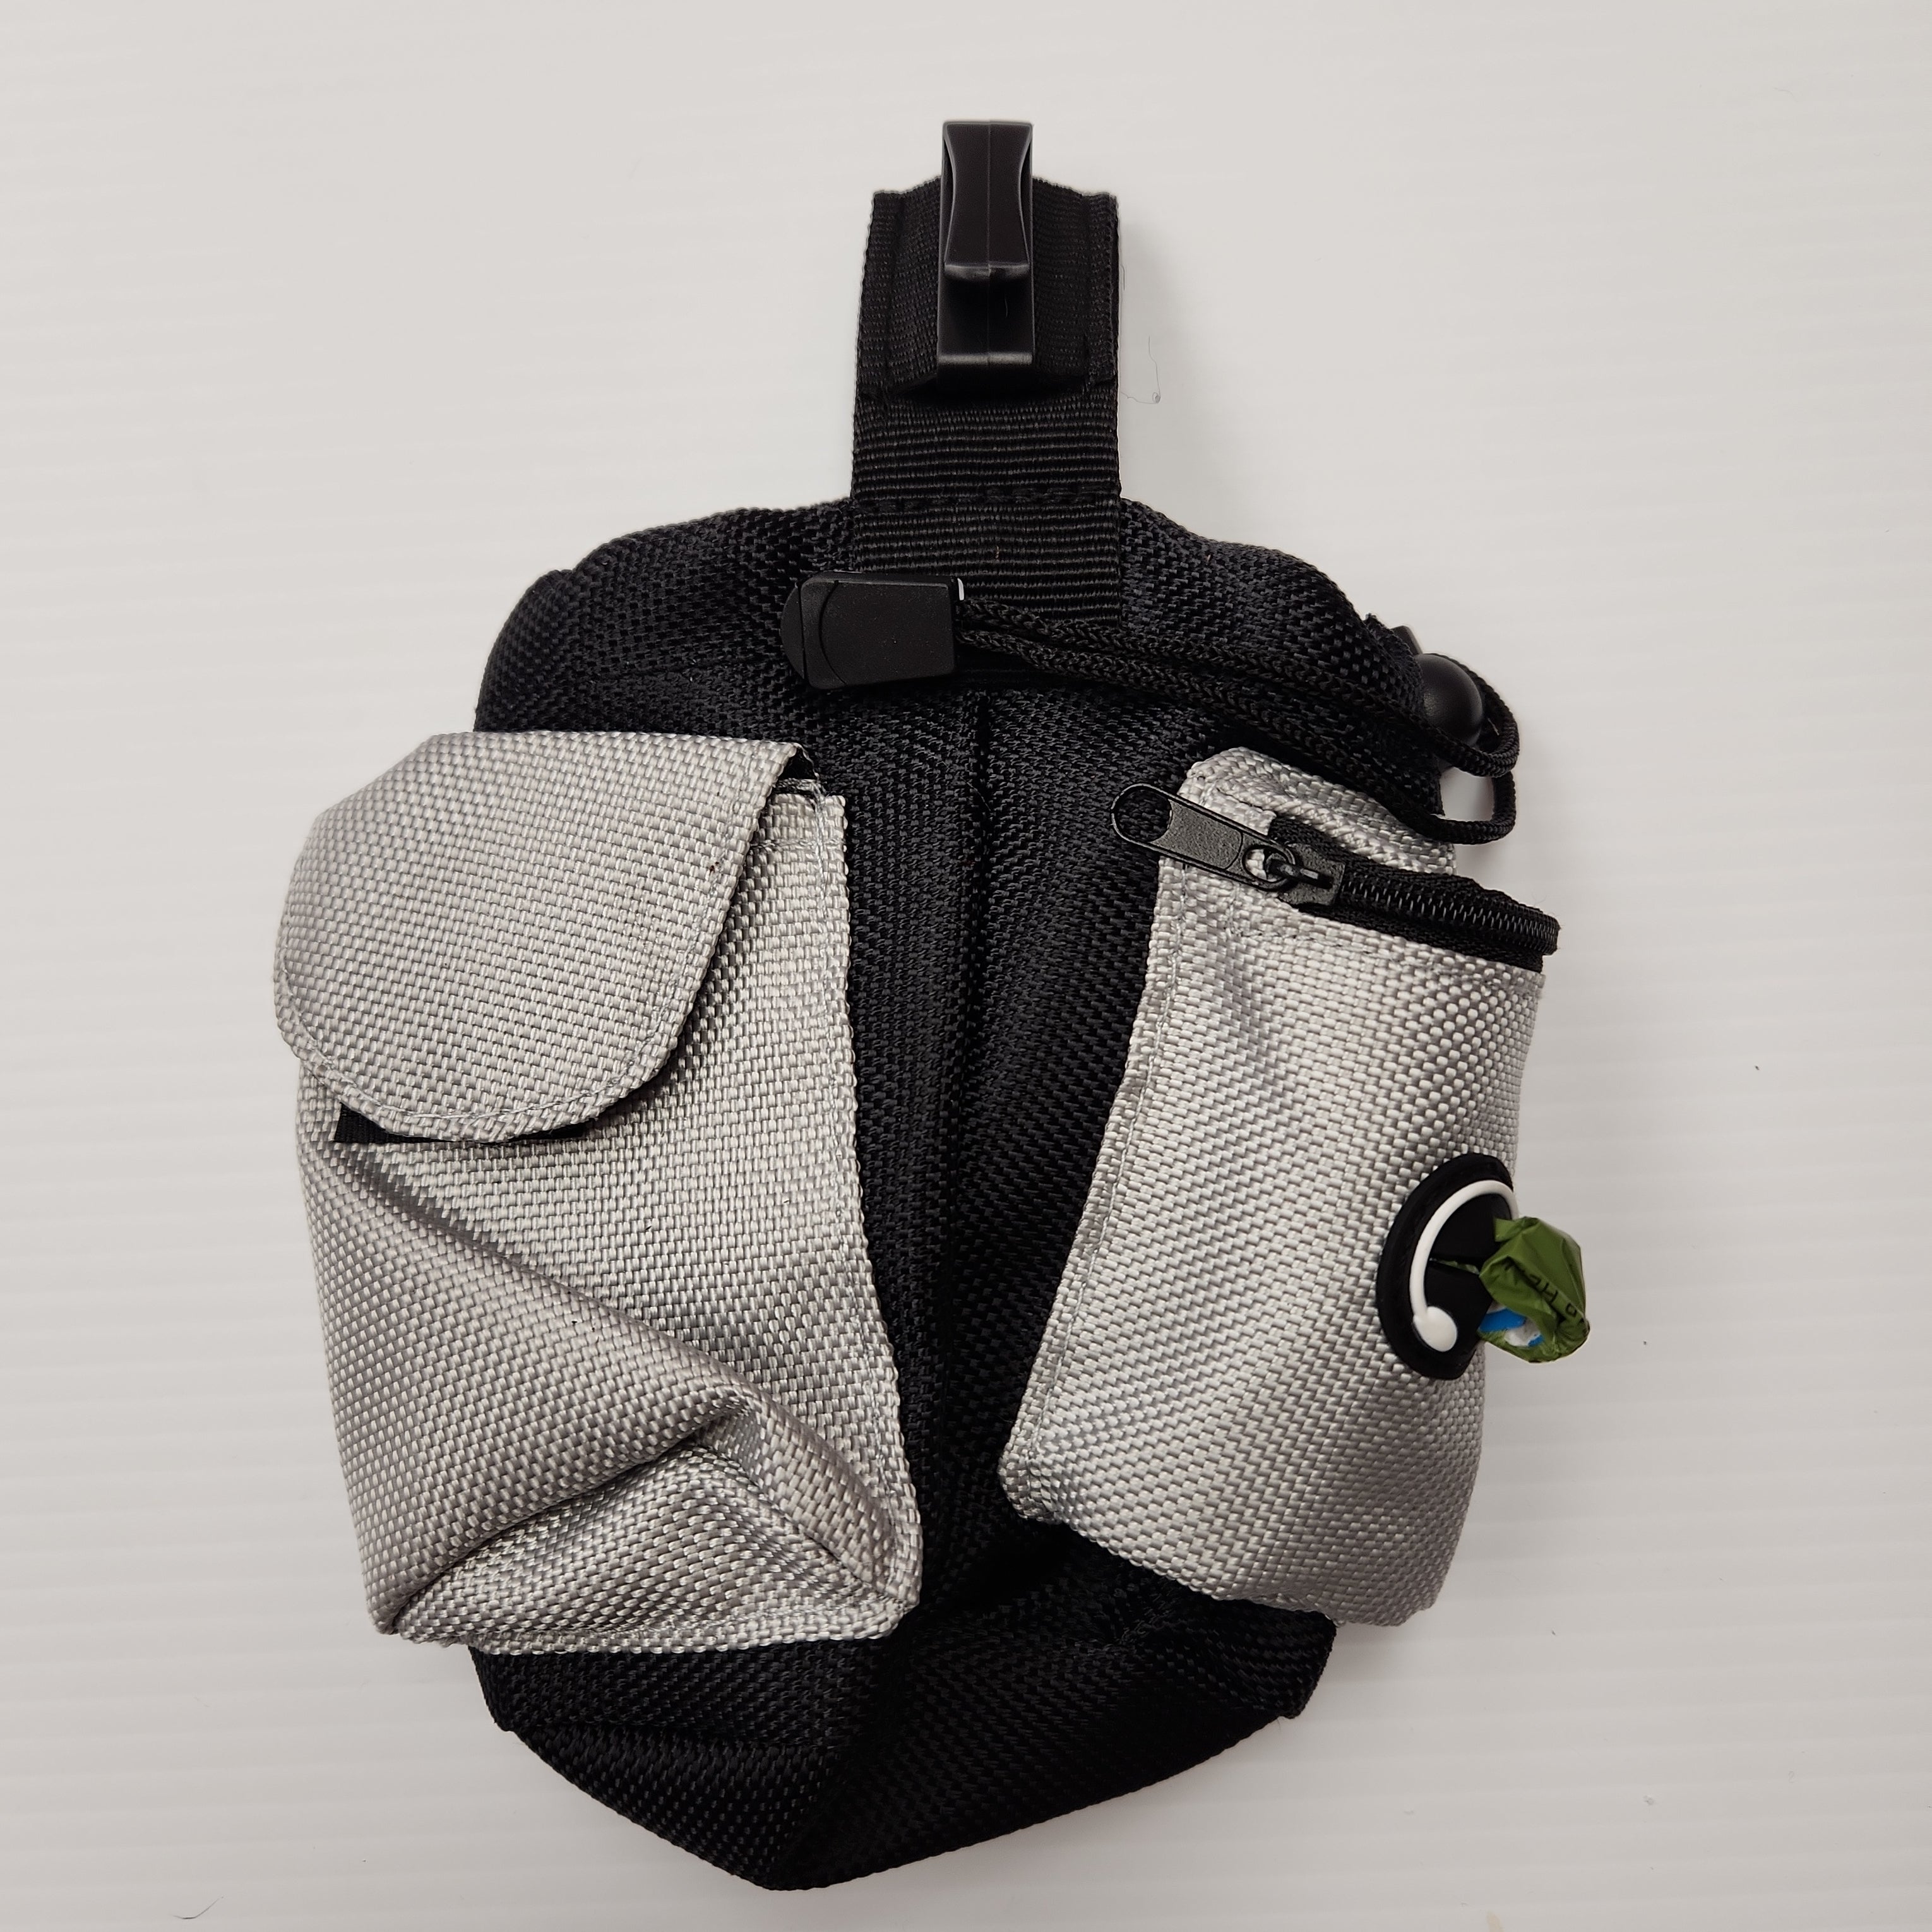 Treat Bag Pouch with Key Pocket, Poop Bag Dispenser, 15 Poop Bags Hooks on Belt or Pockets